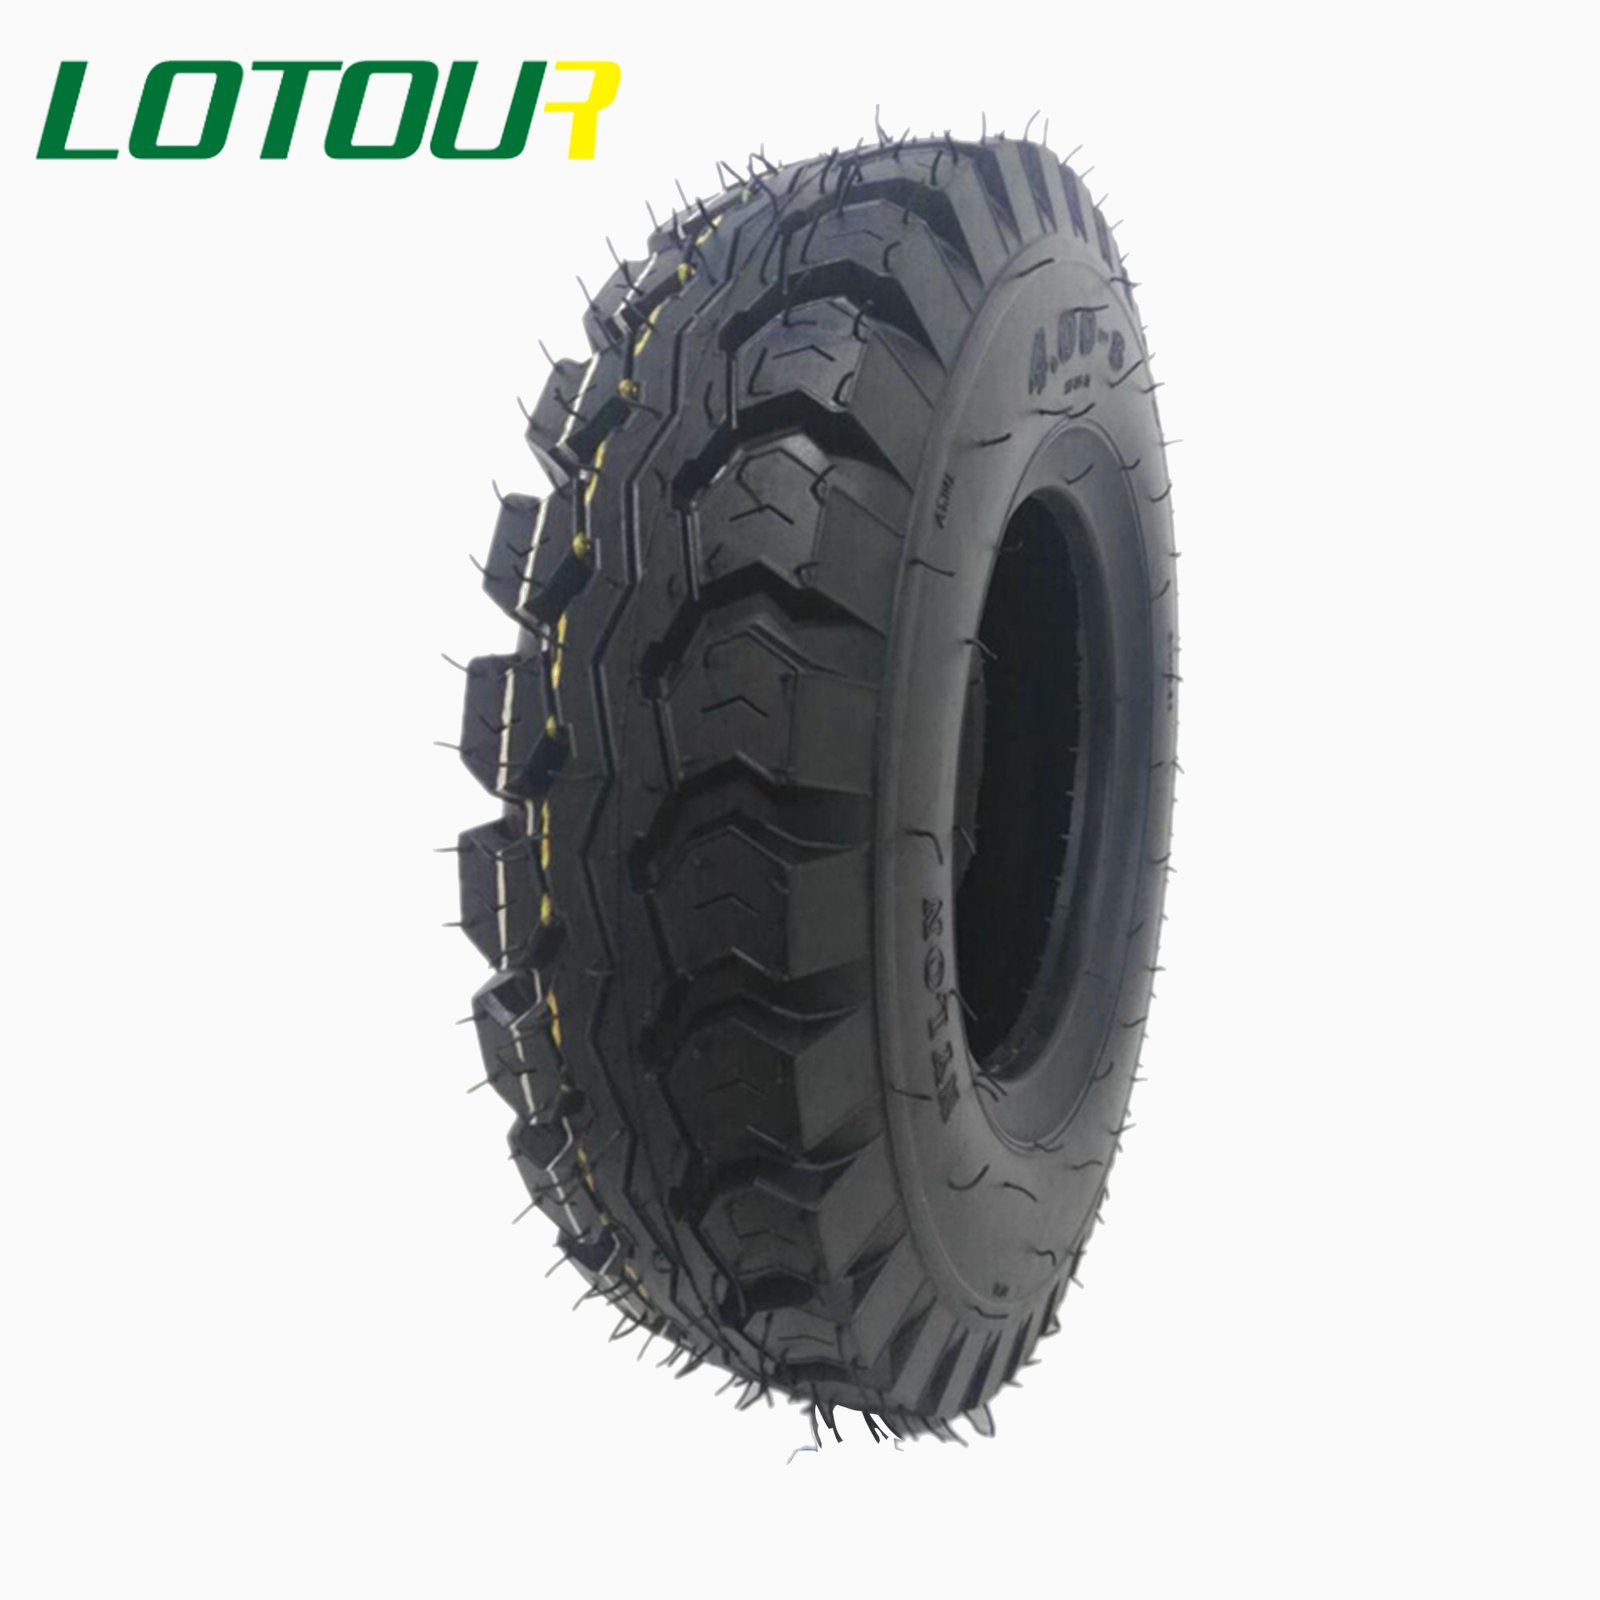 Lotour Tire M1079